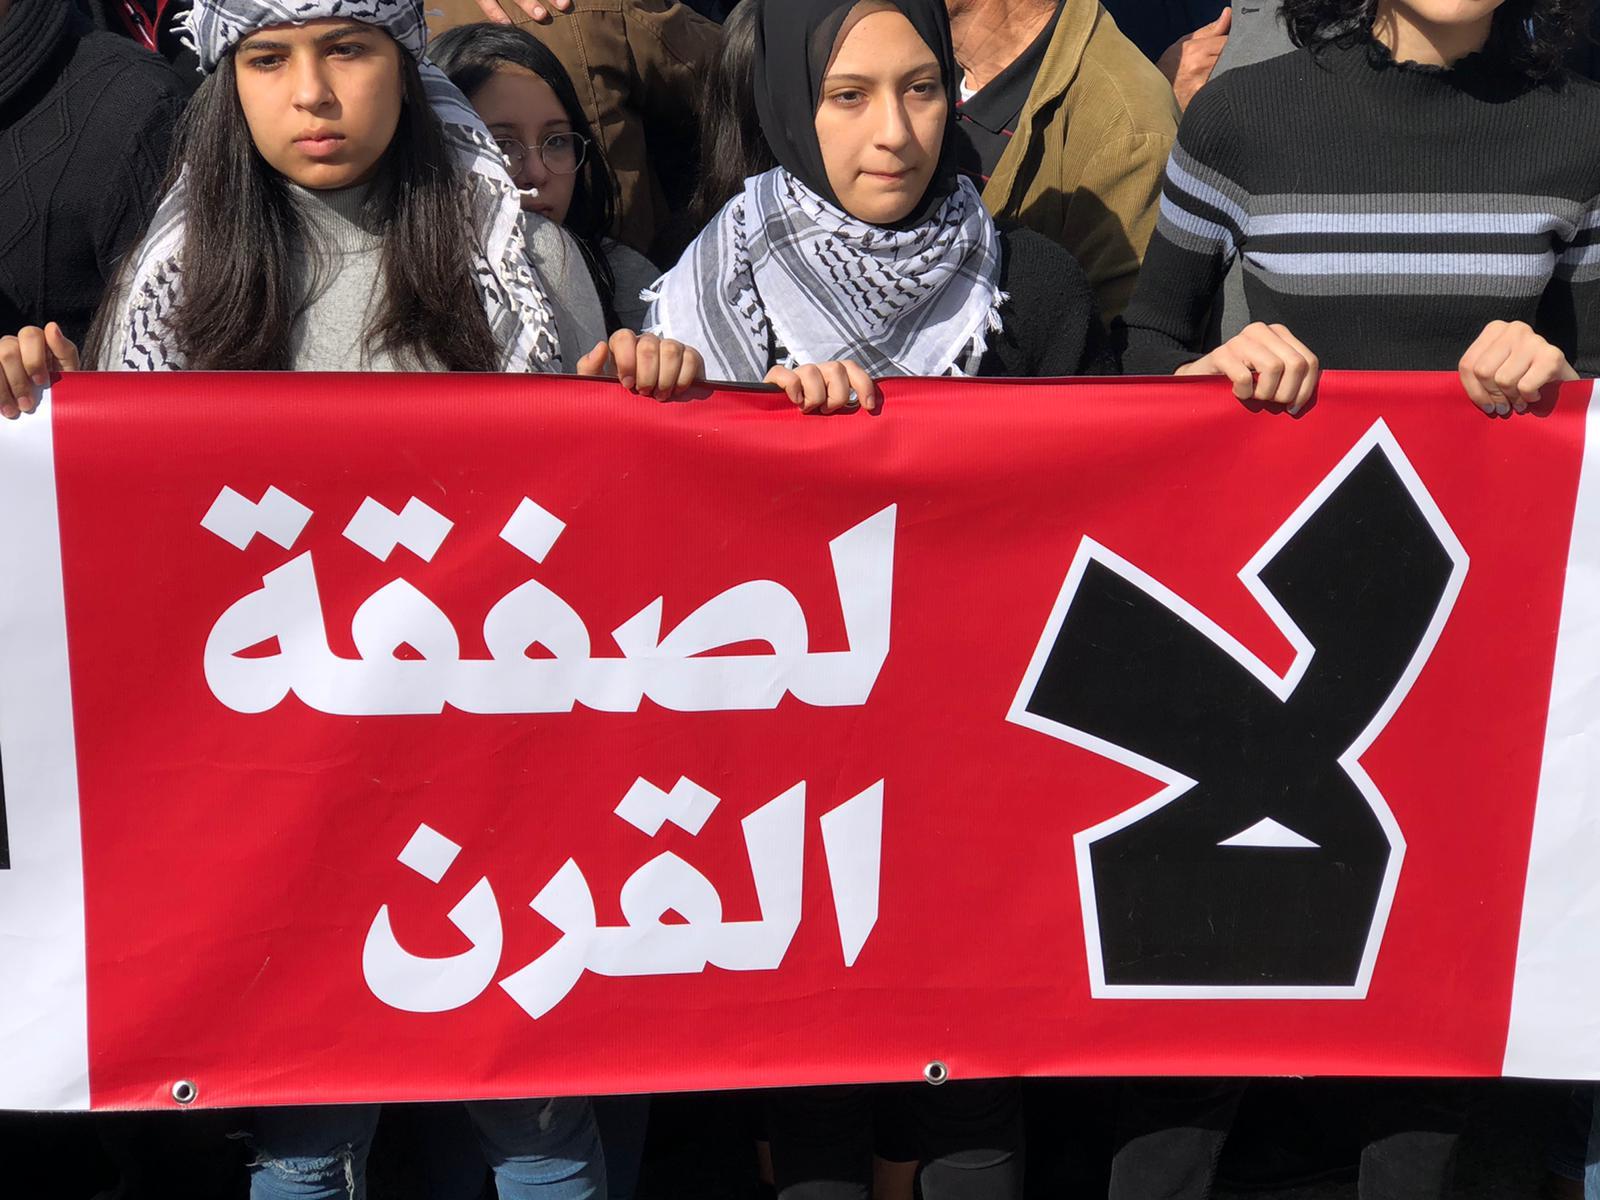 باقة الغربية: مظاهرة حاشدة ضد "صفقة القرن"  